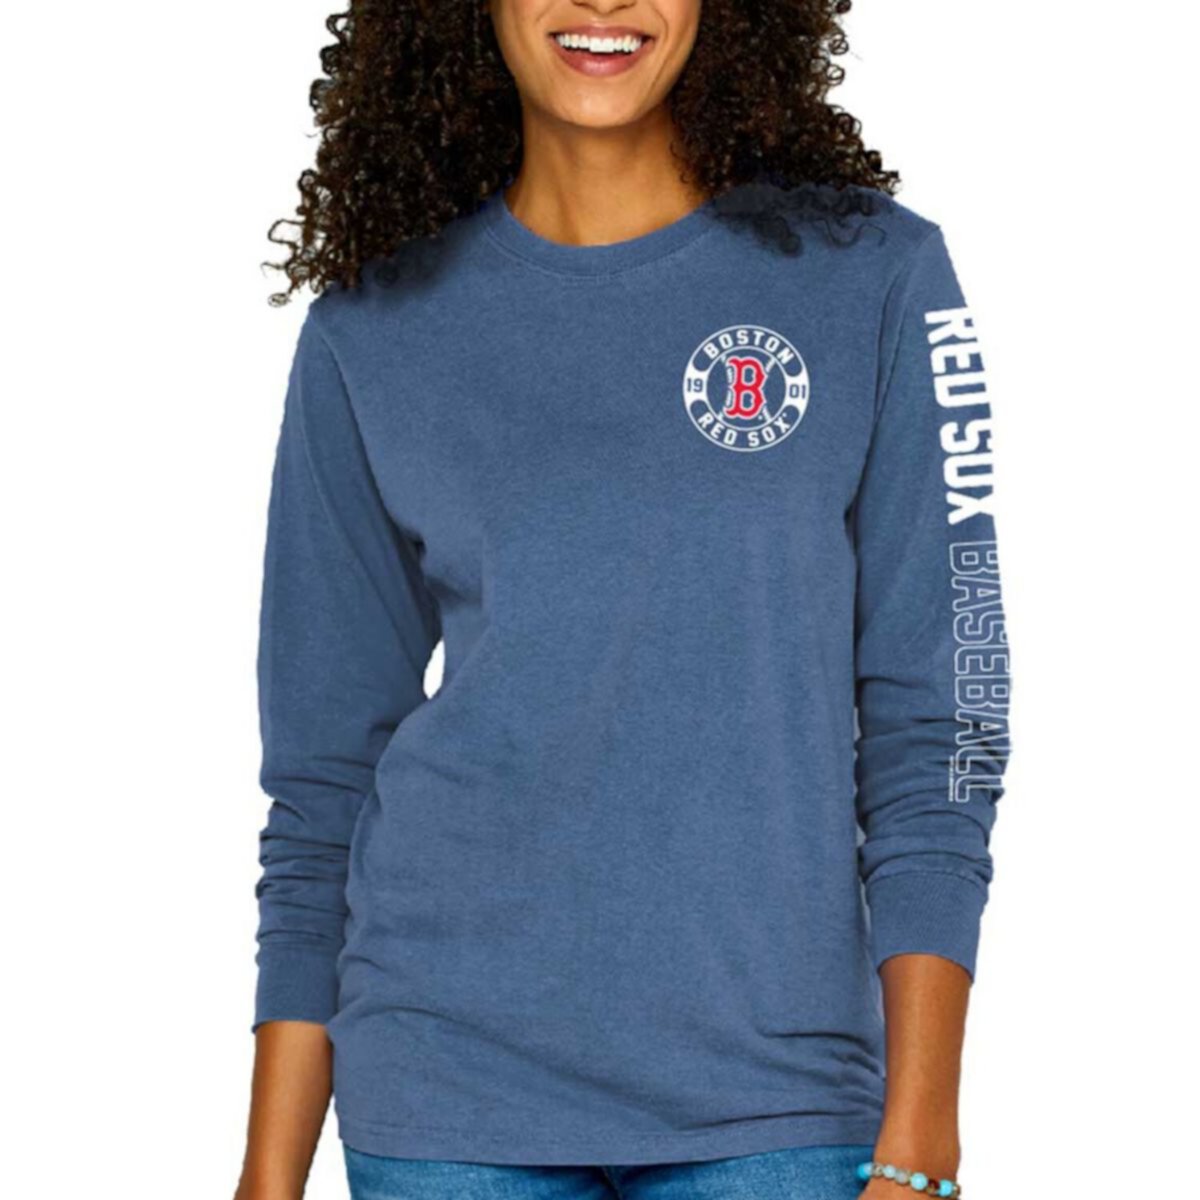 Женская мягкая, как виноград, синяя футболка Boston Red Sox, окрашенная пигментом, с длинными рукавами Soft As A Grape